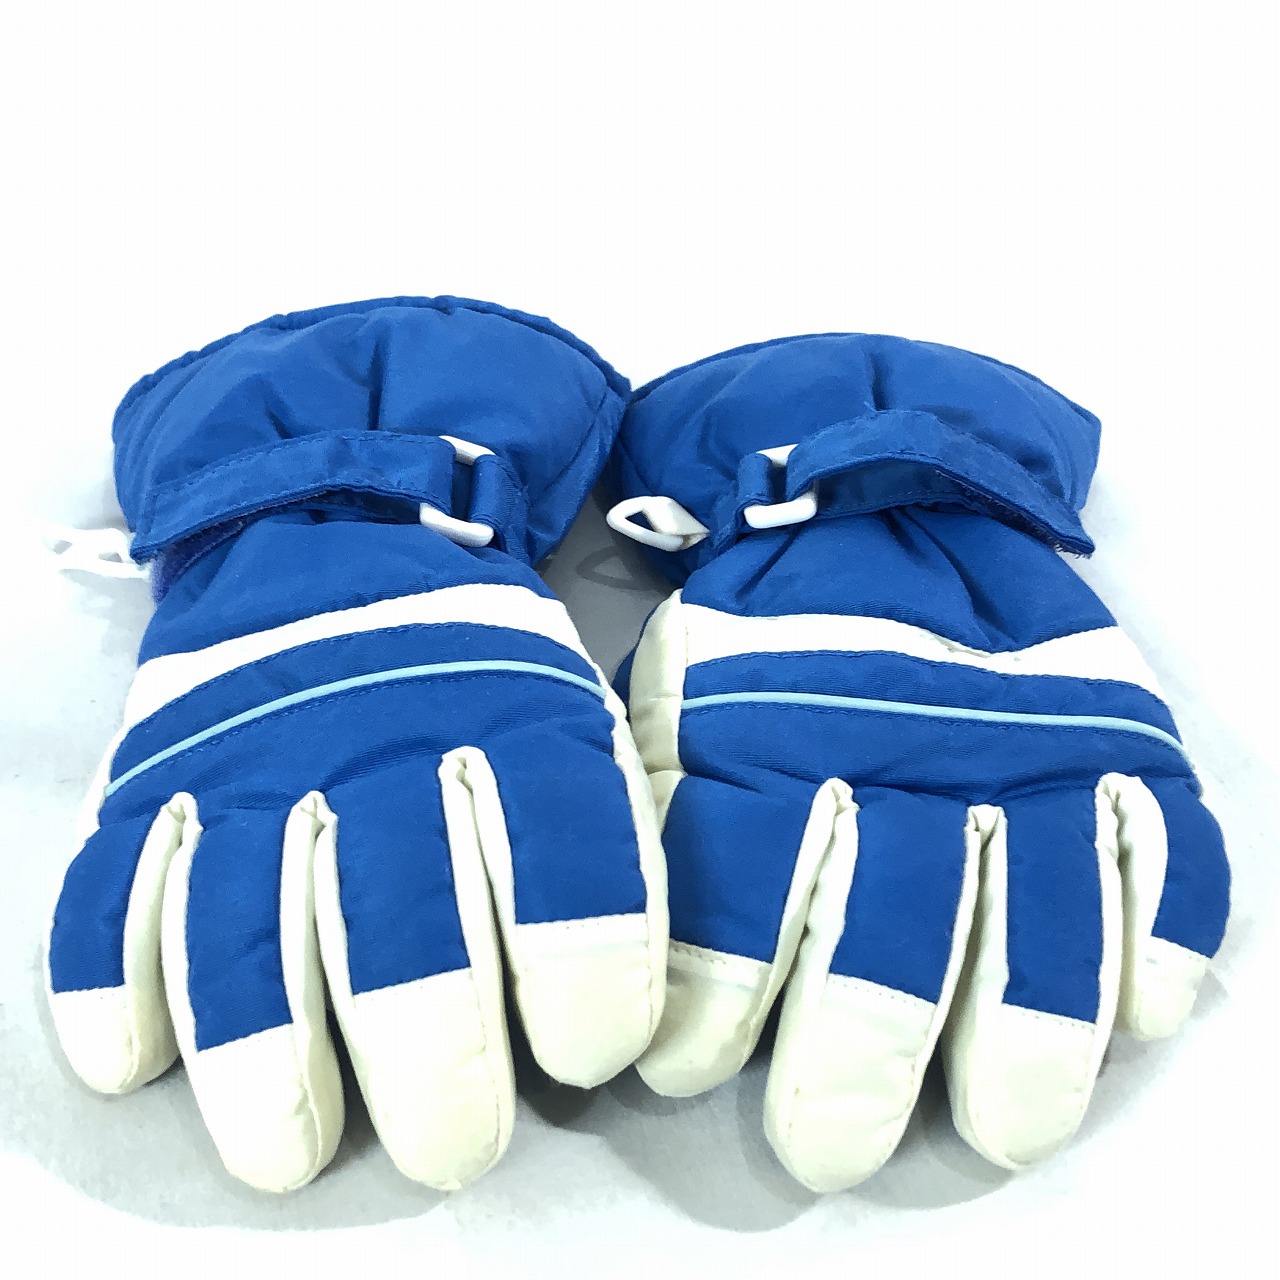  No-brand Kids мужчина обратная сторона ворсистый snow перчатка перчатки синий белый прекрасный товар стоимость доставки 185 иен 